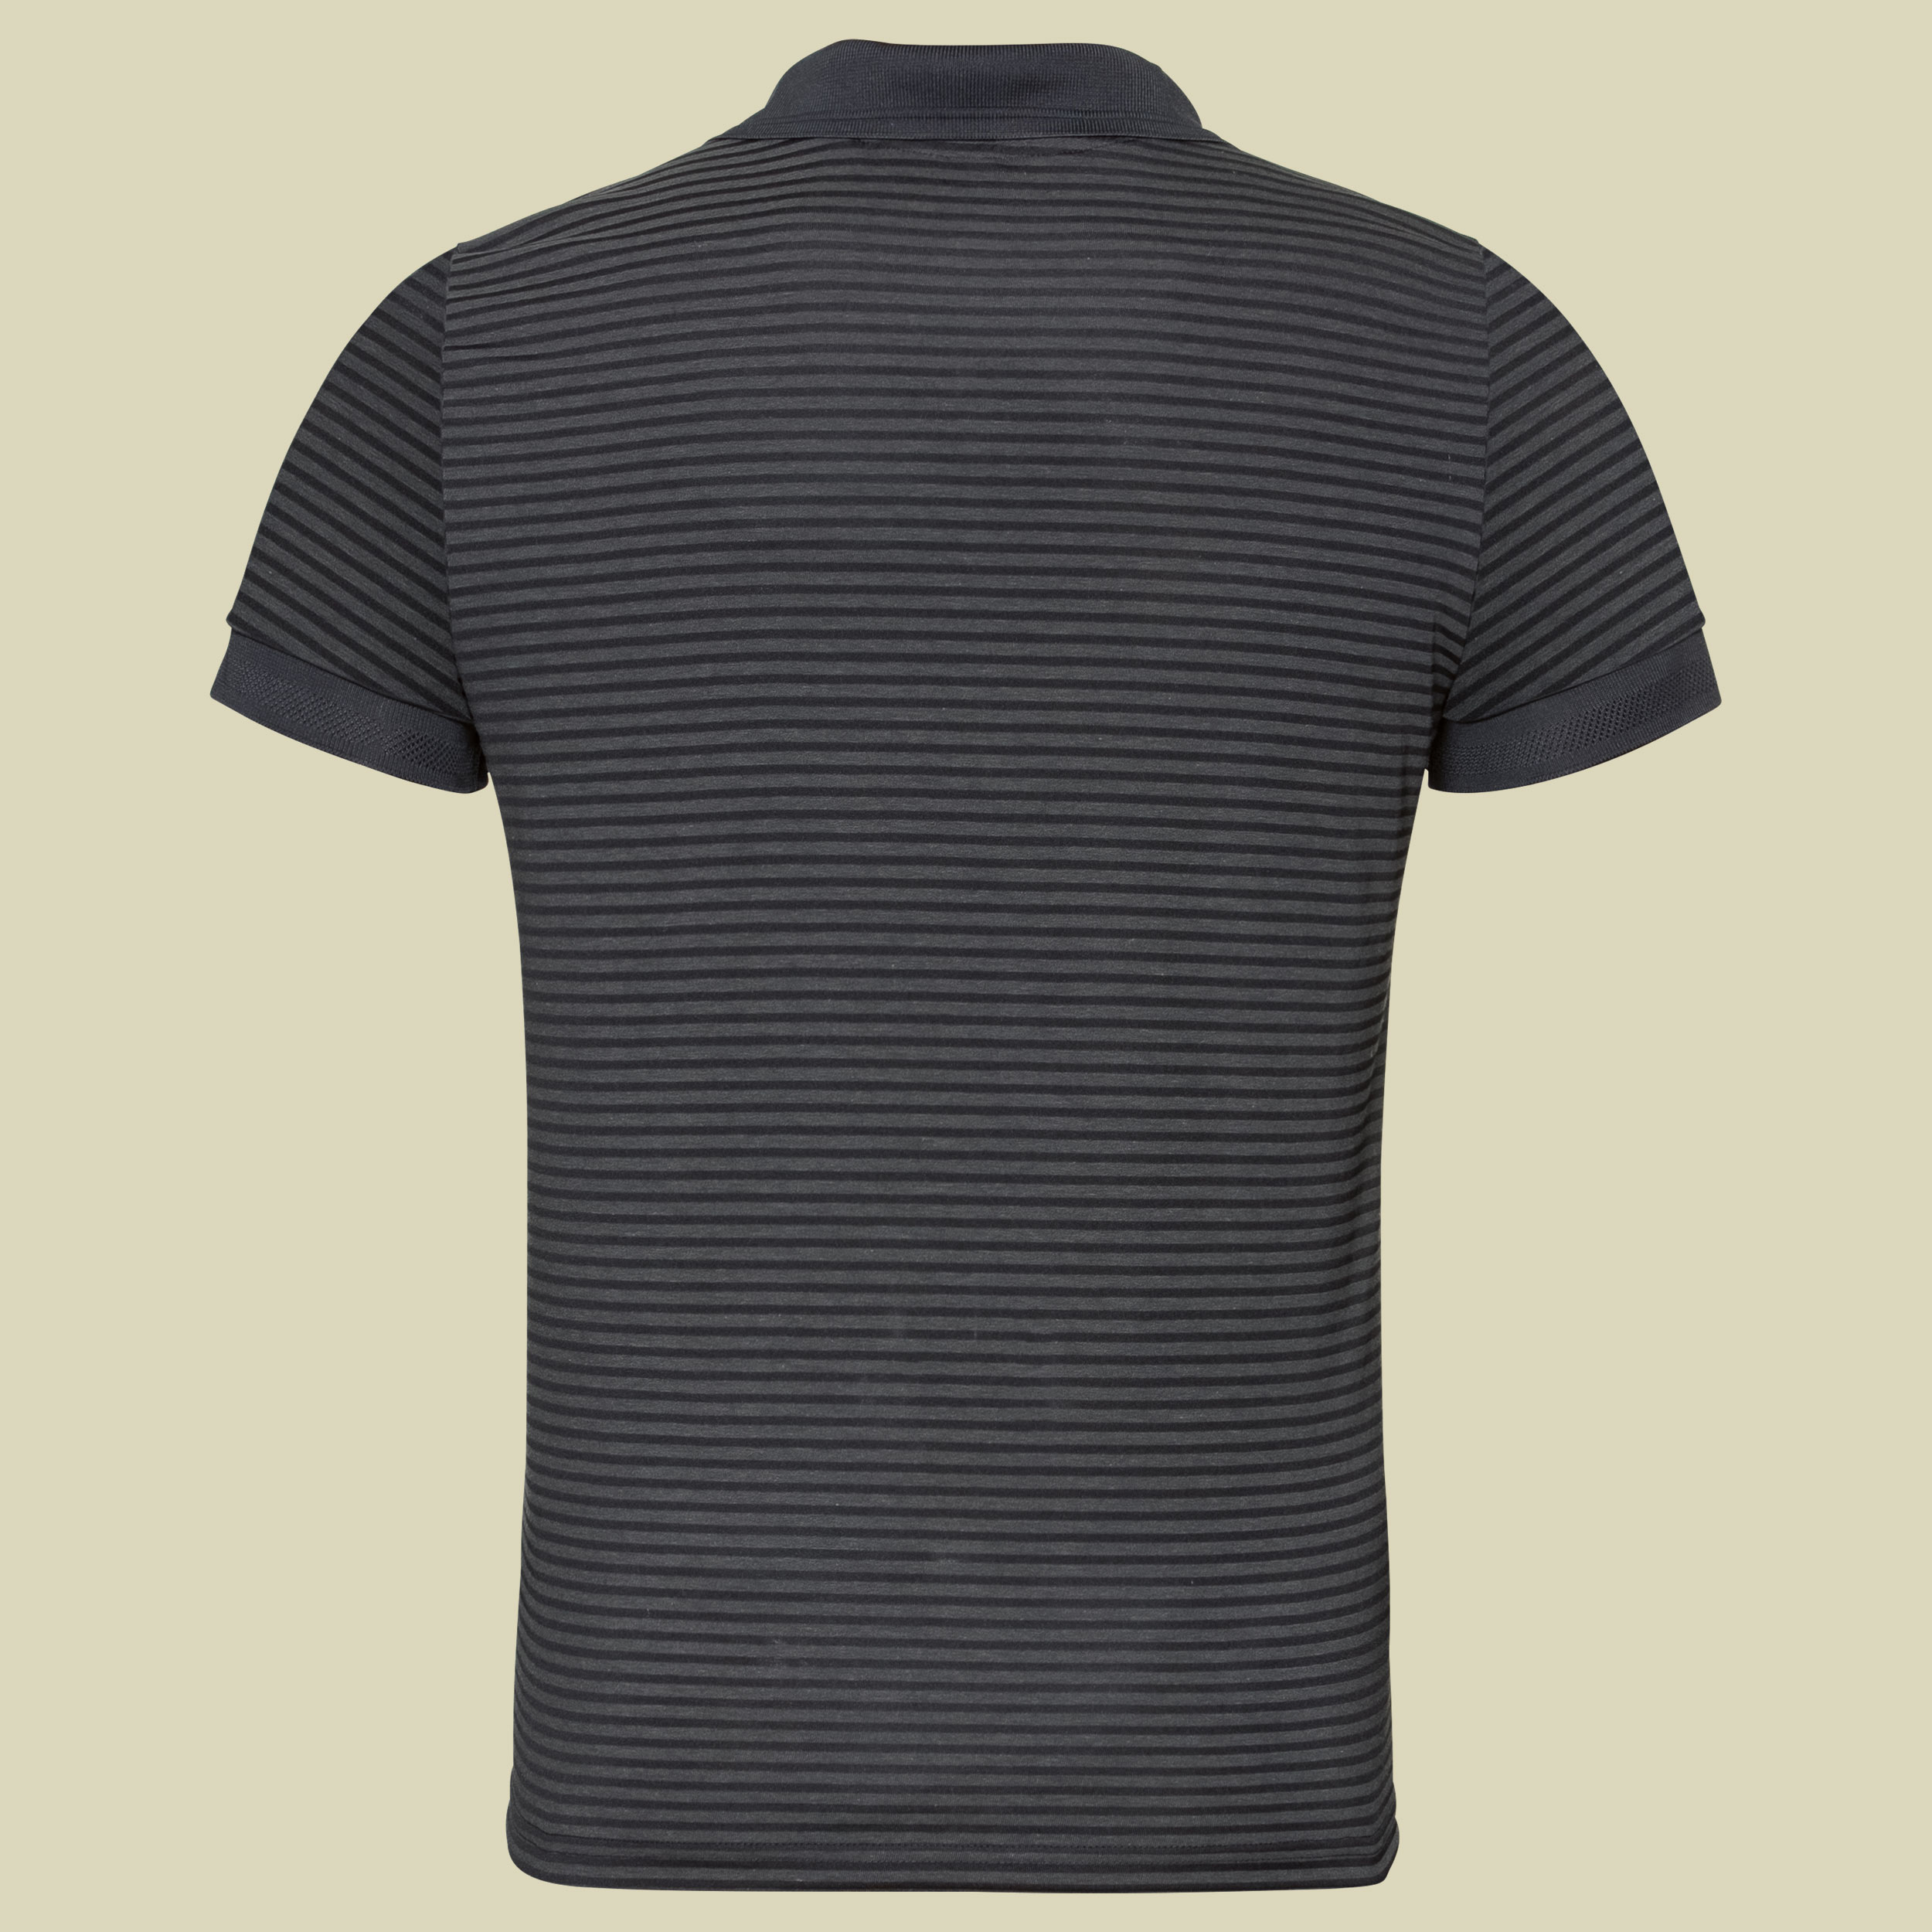 Polo s/s Nikko Dry men  Größe S Farbe black-odlo steel grey stripes